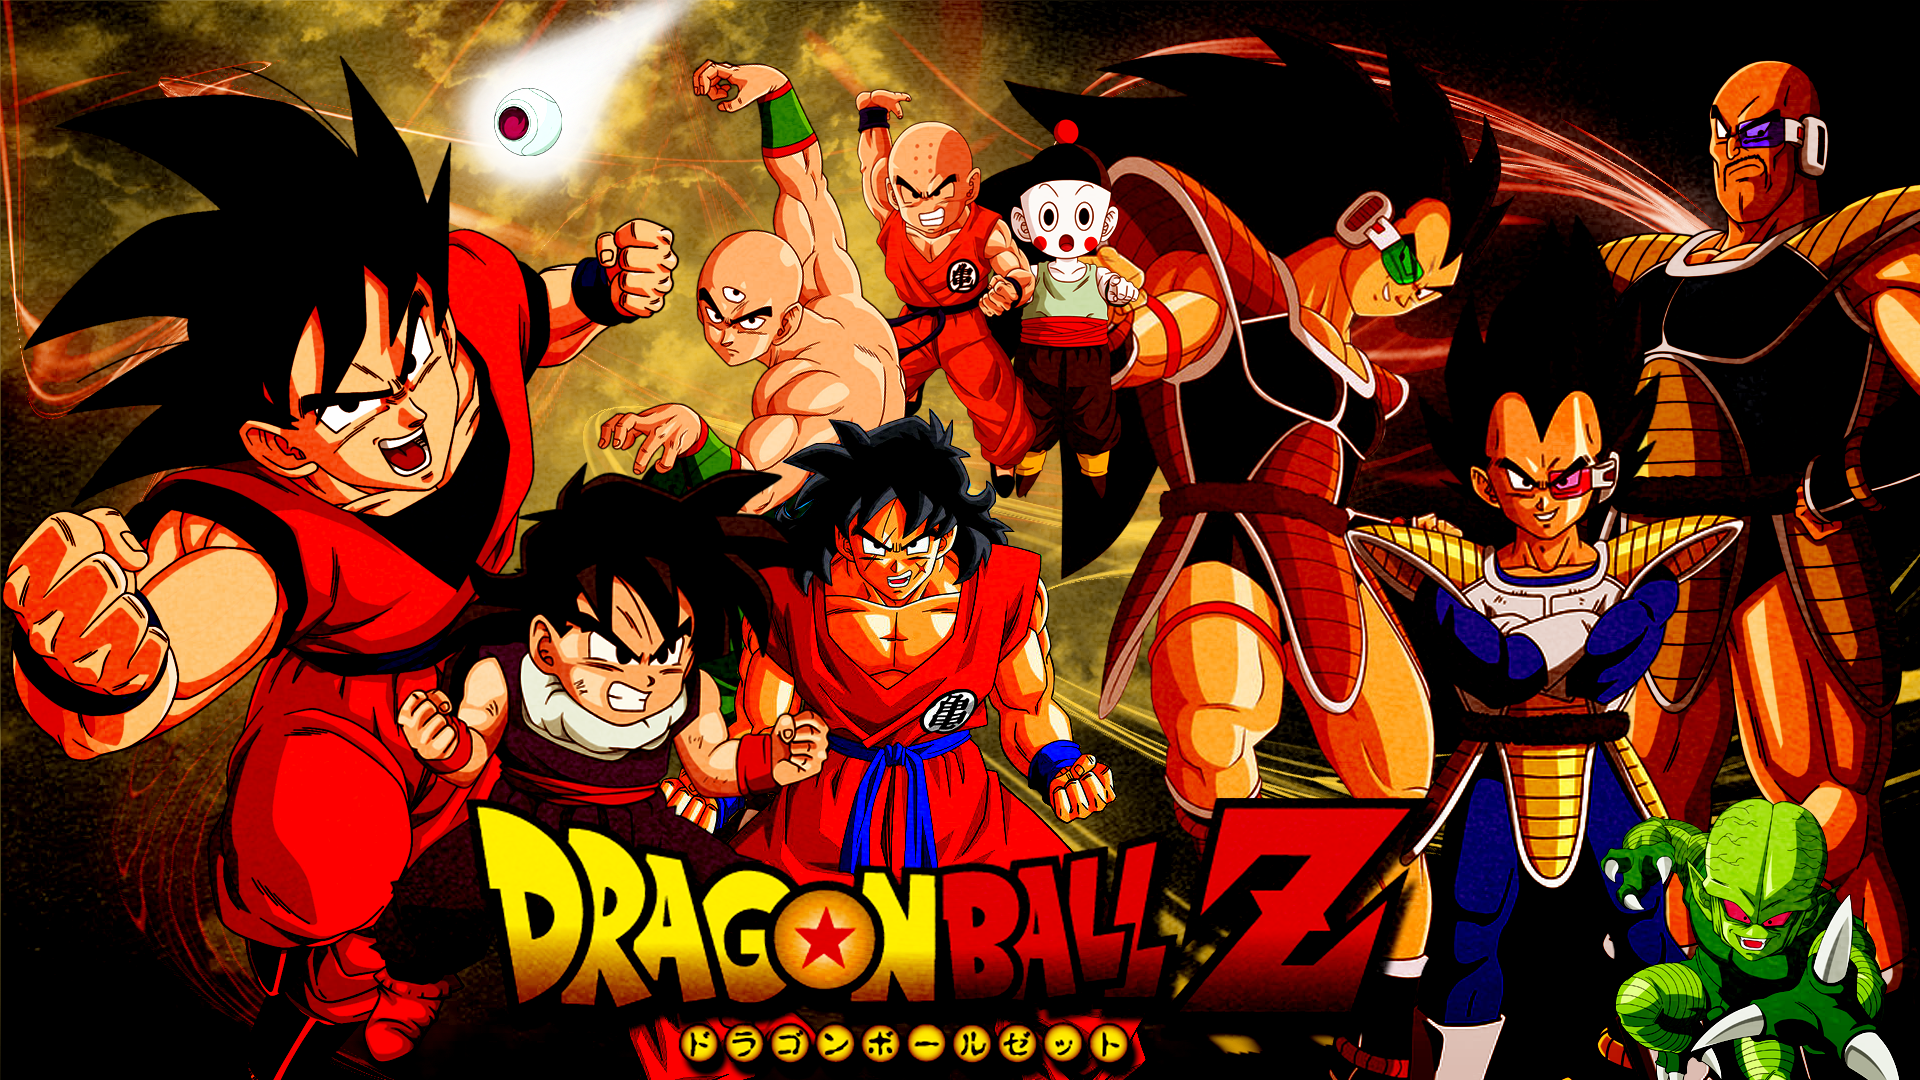 Dragon Ball Z Sagas fanart by Raydash30 on DeviantArt